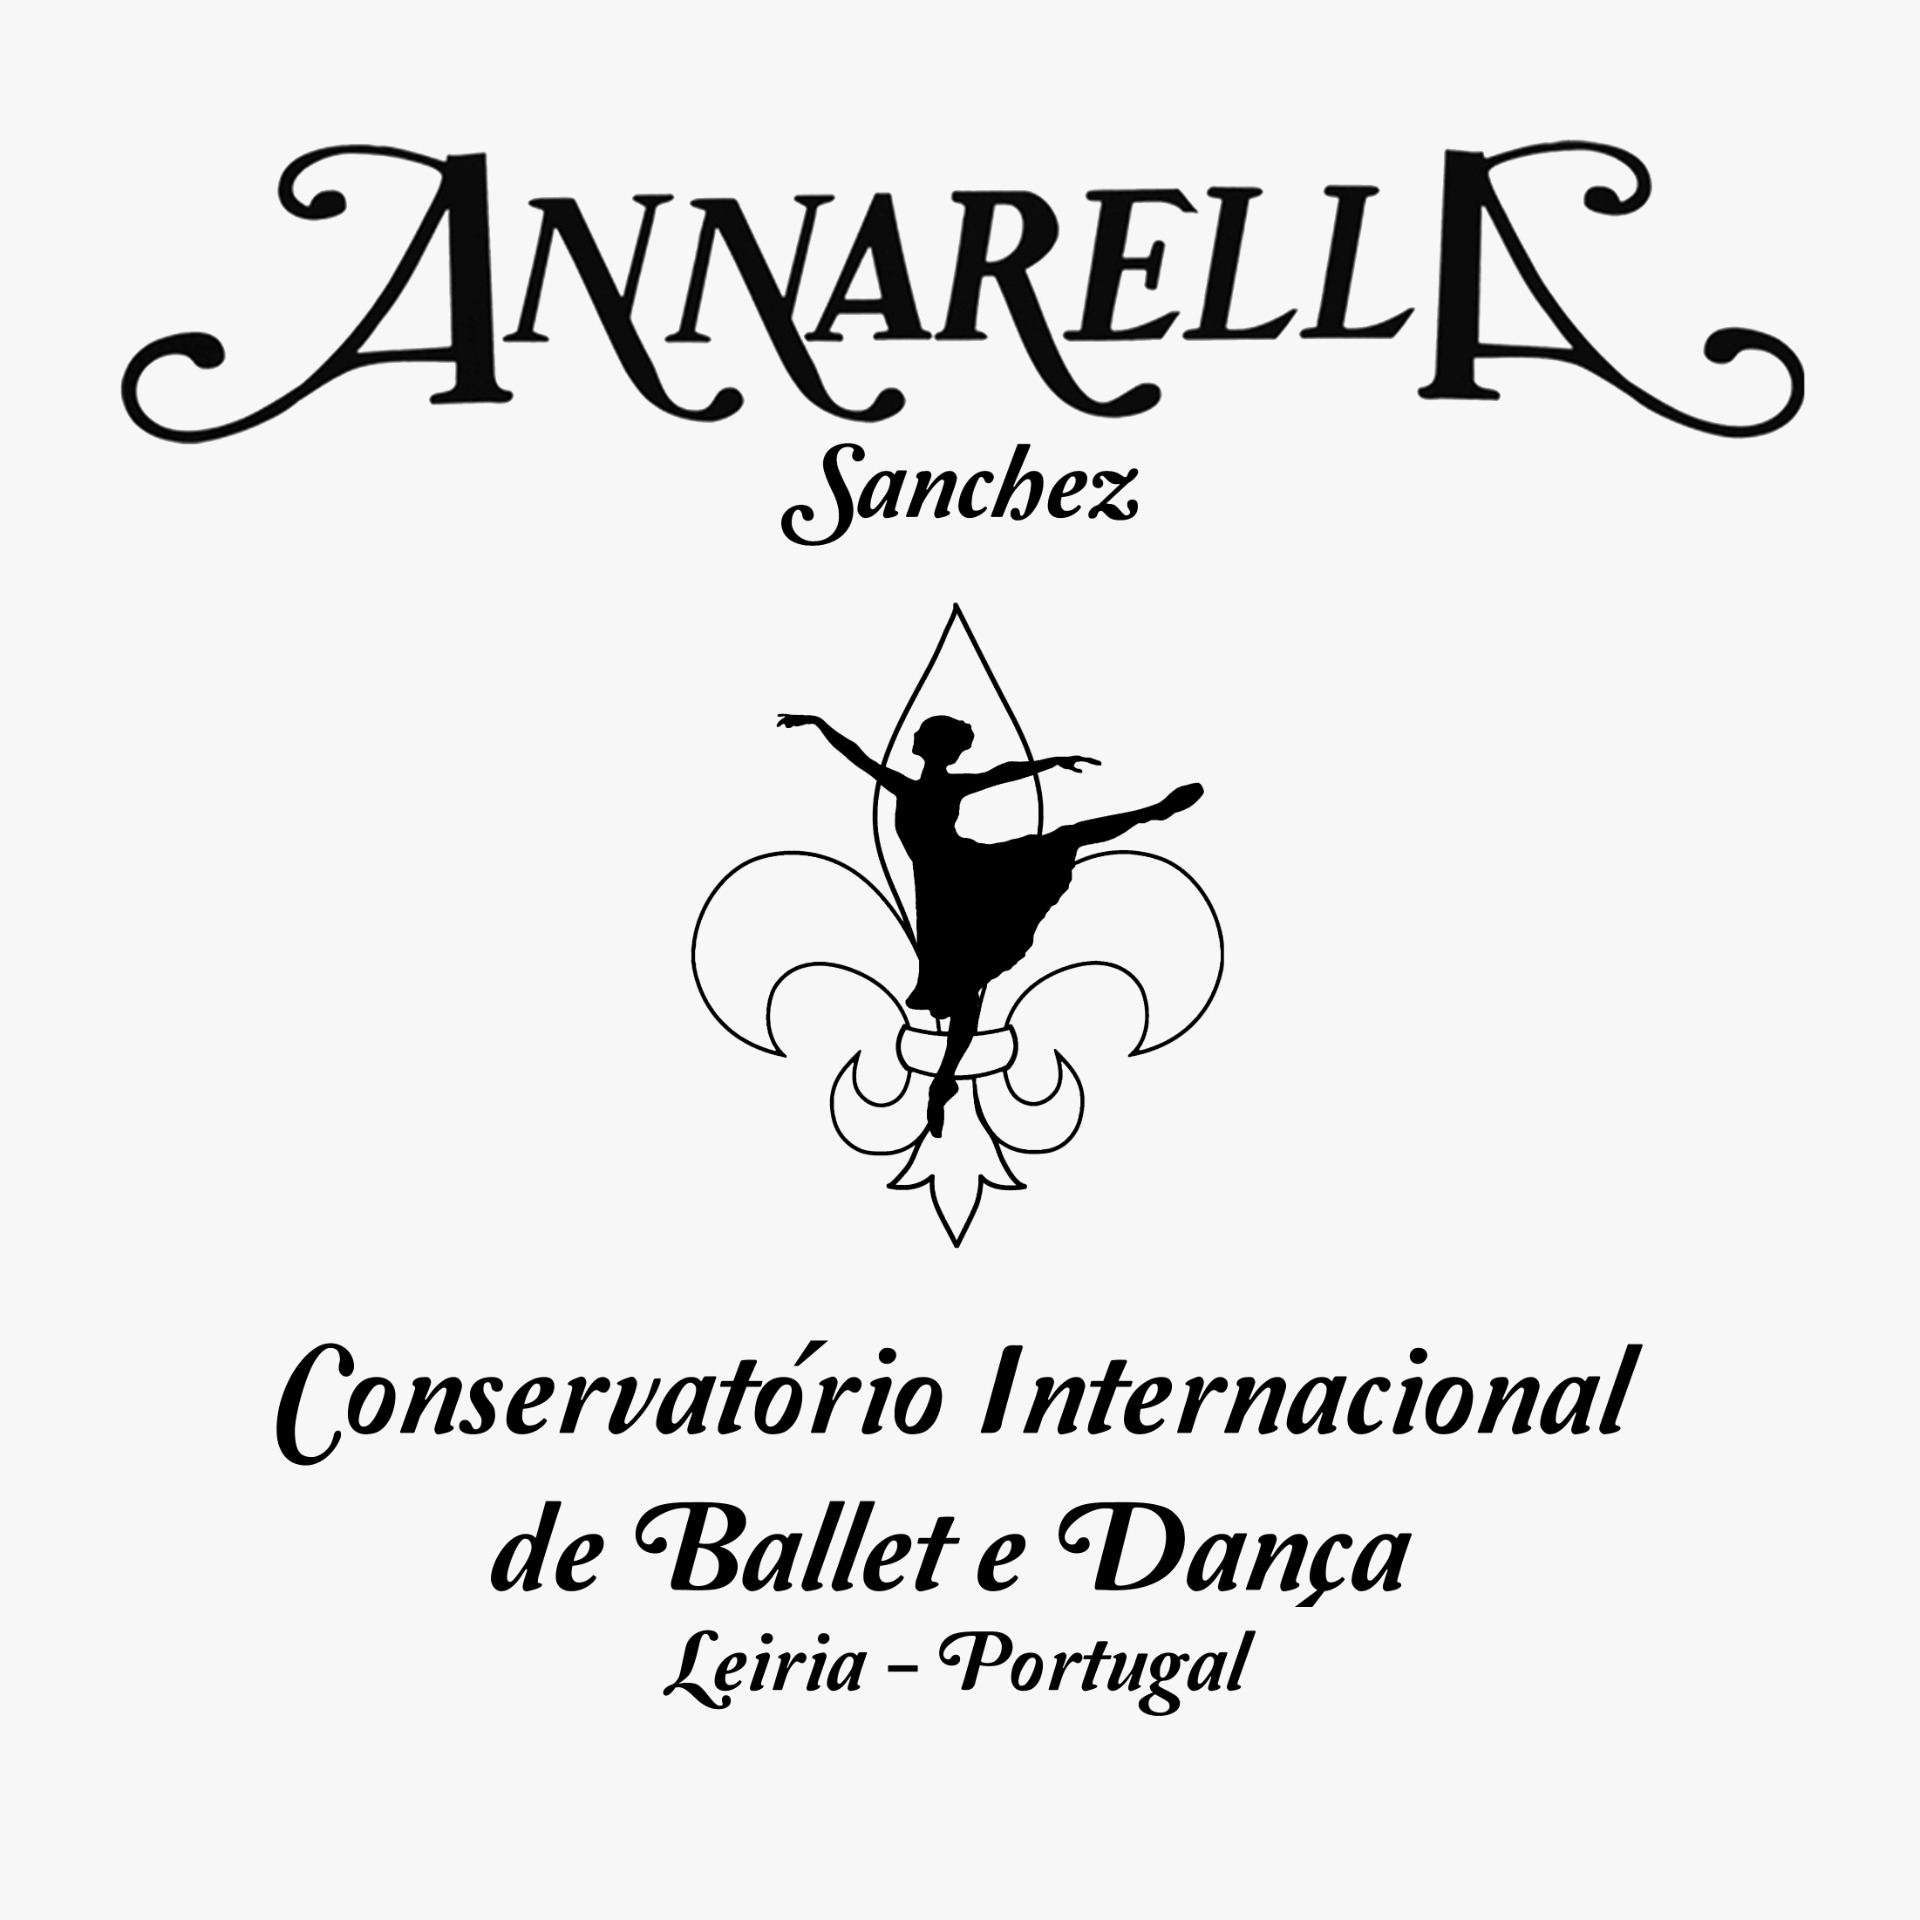 Annarella-Portugal